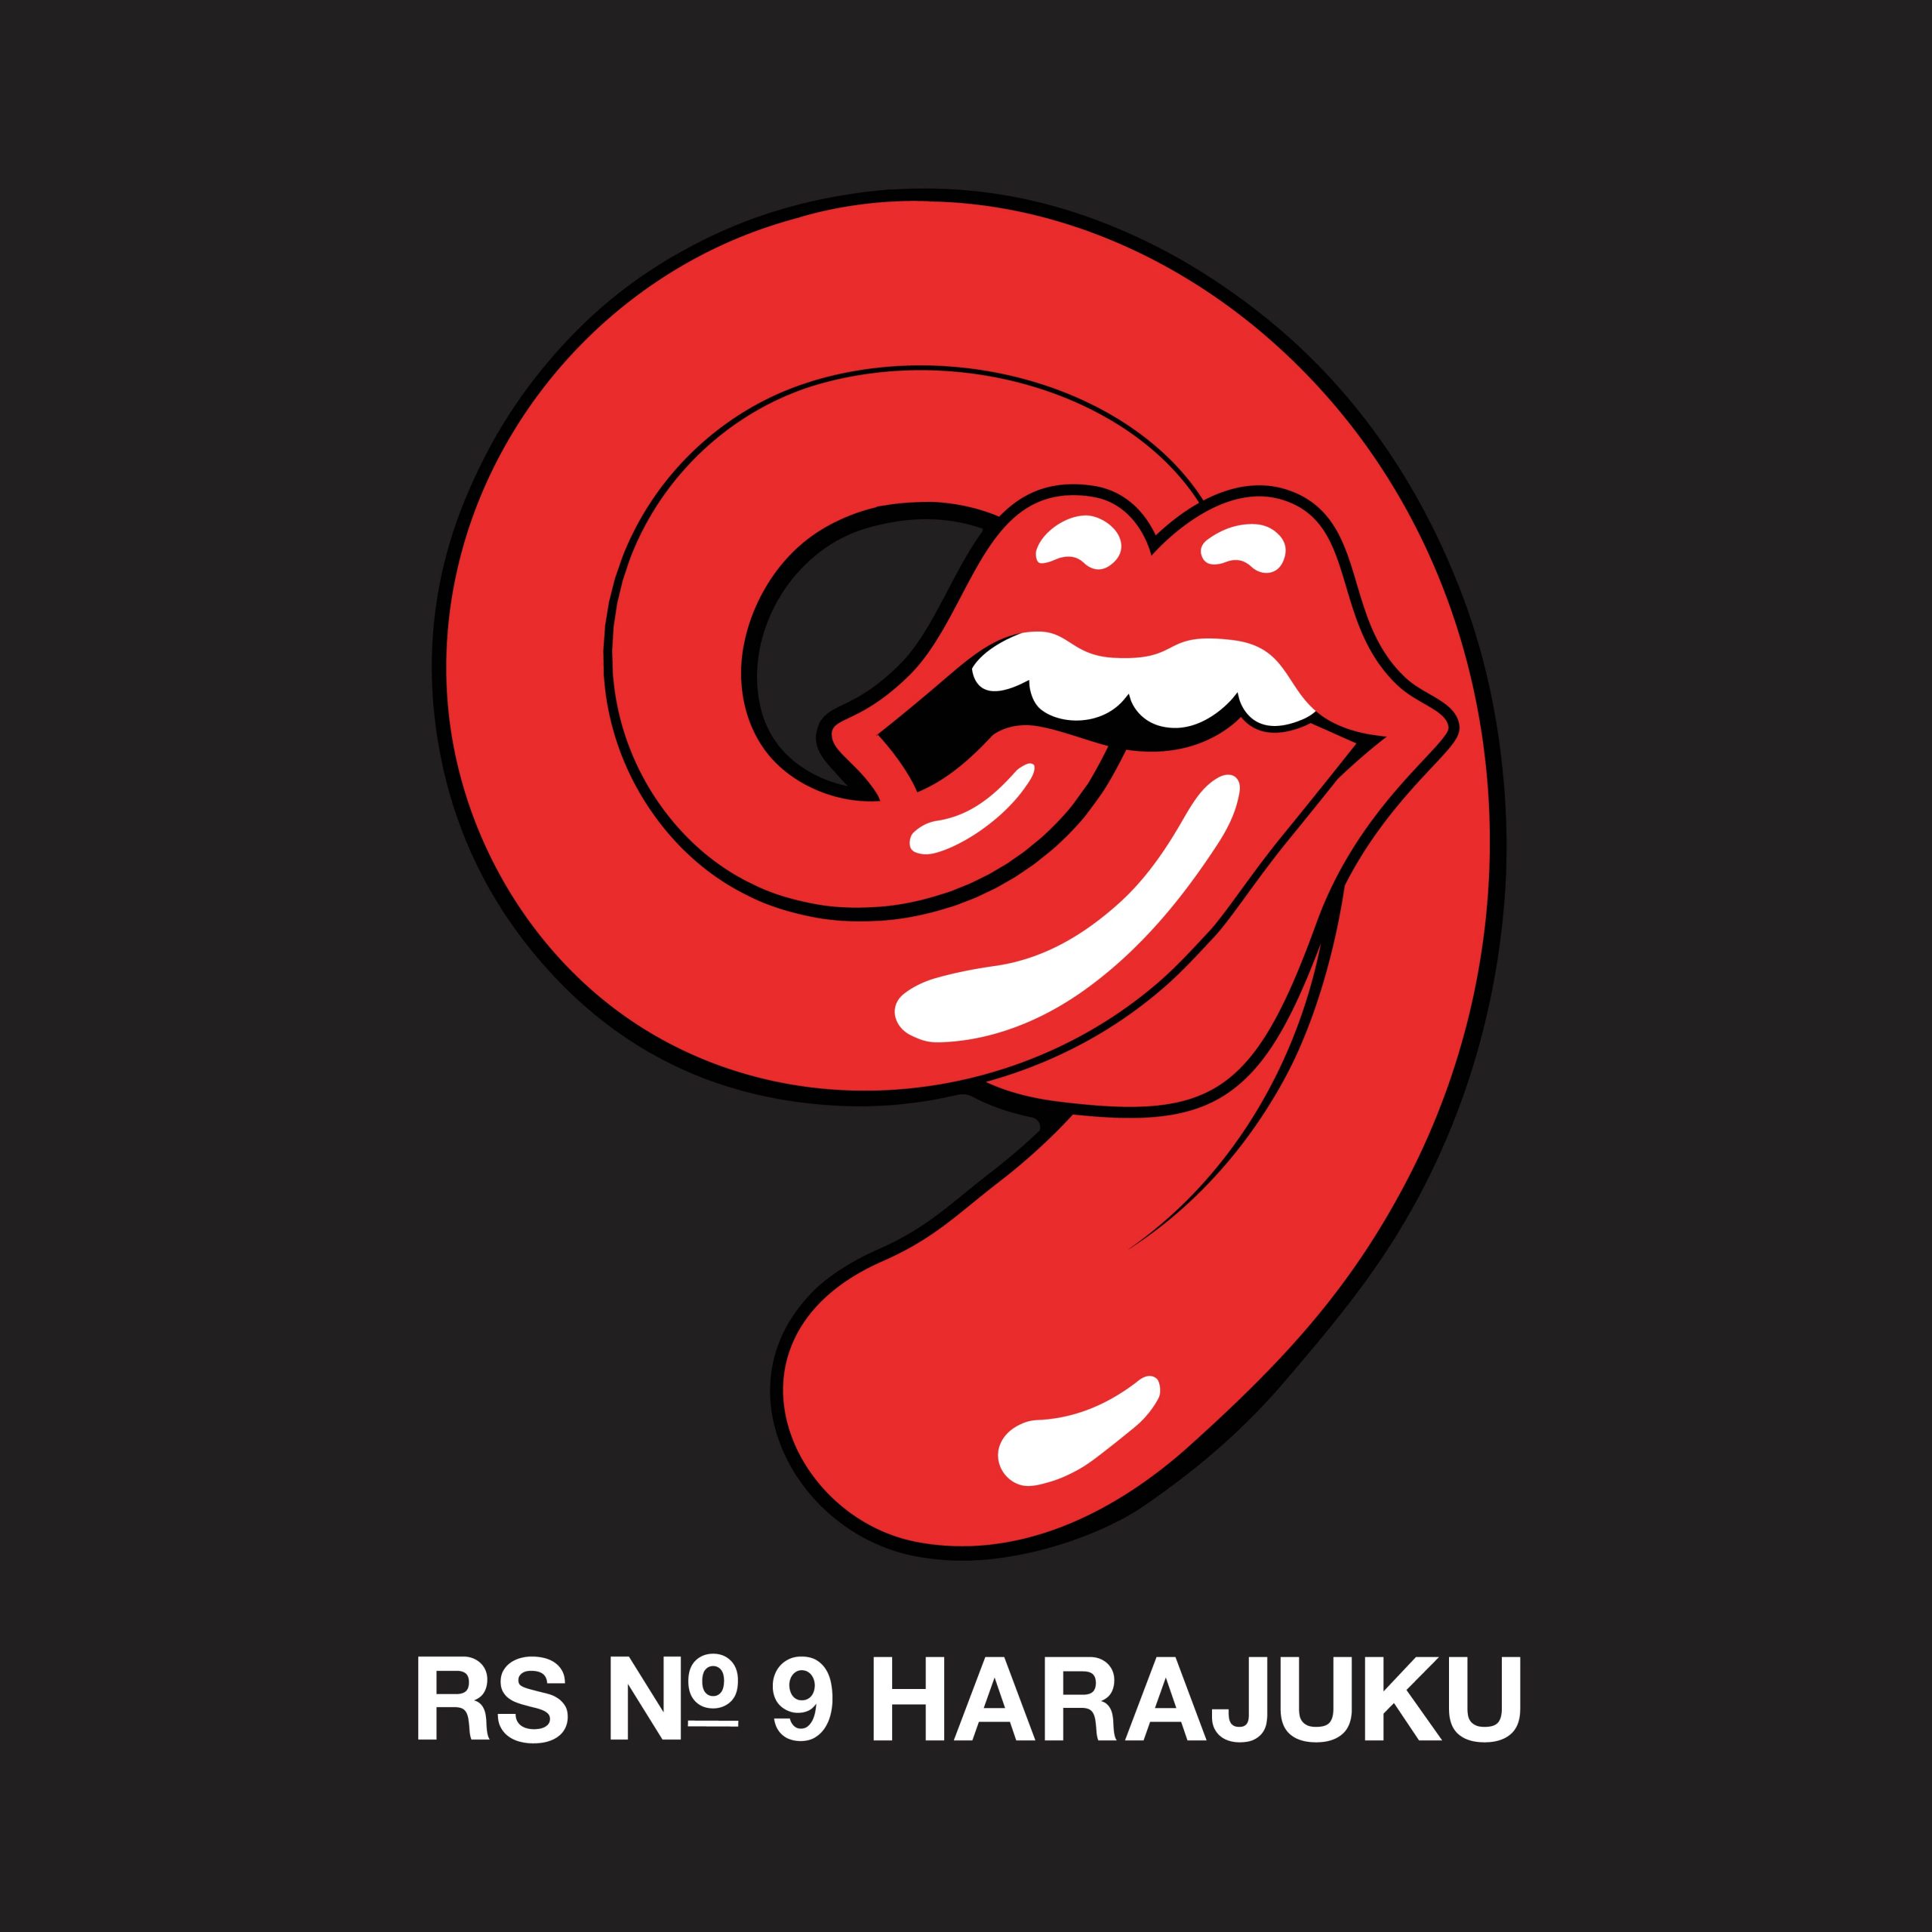 ザ・ローリング・ストーンズの公式アパレルストア「RS No.9」が日本初 